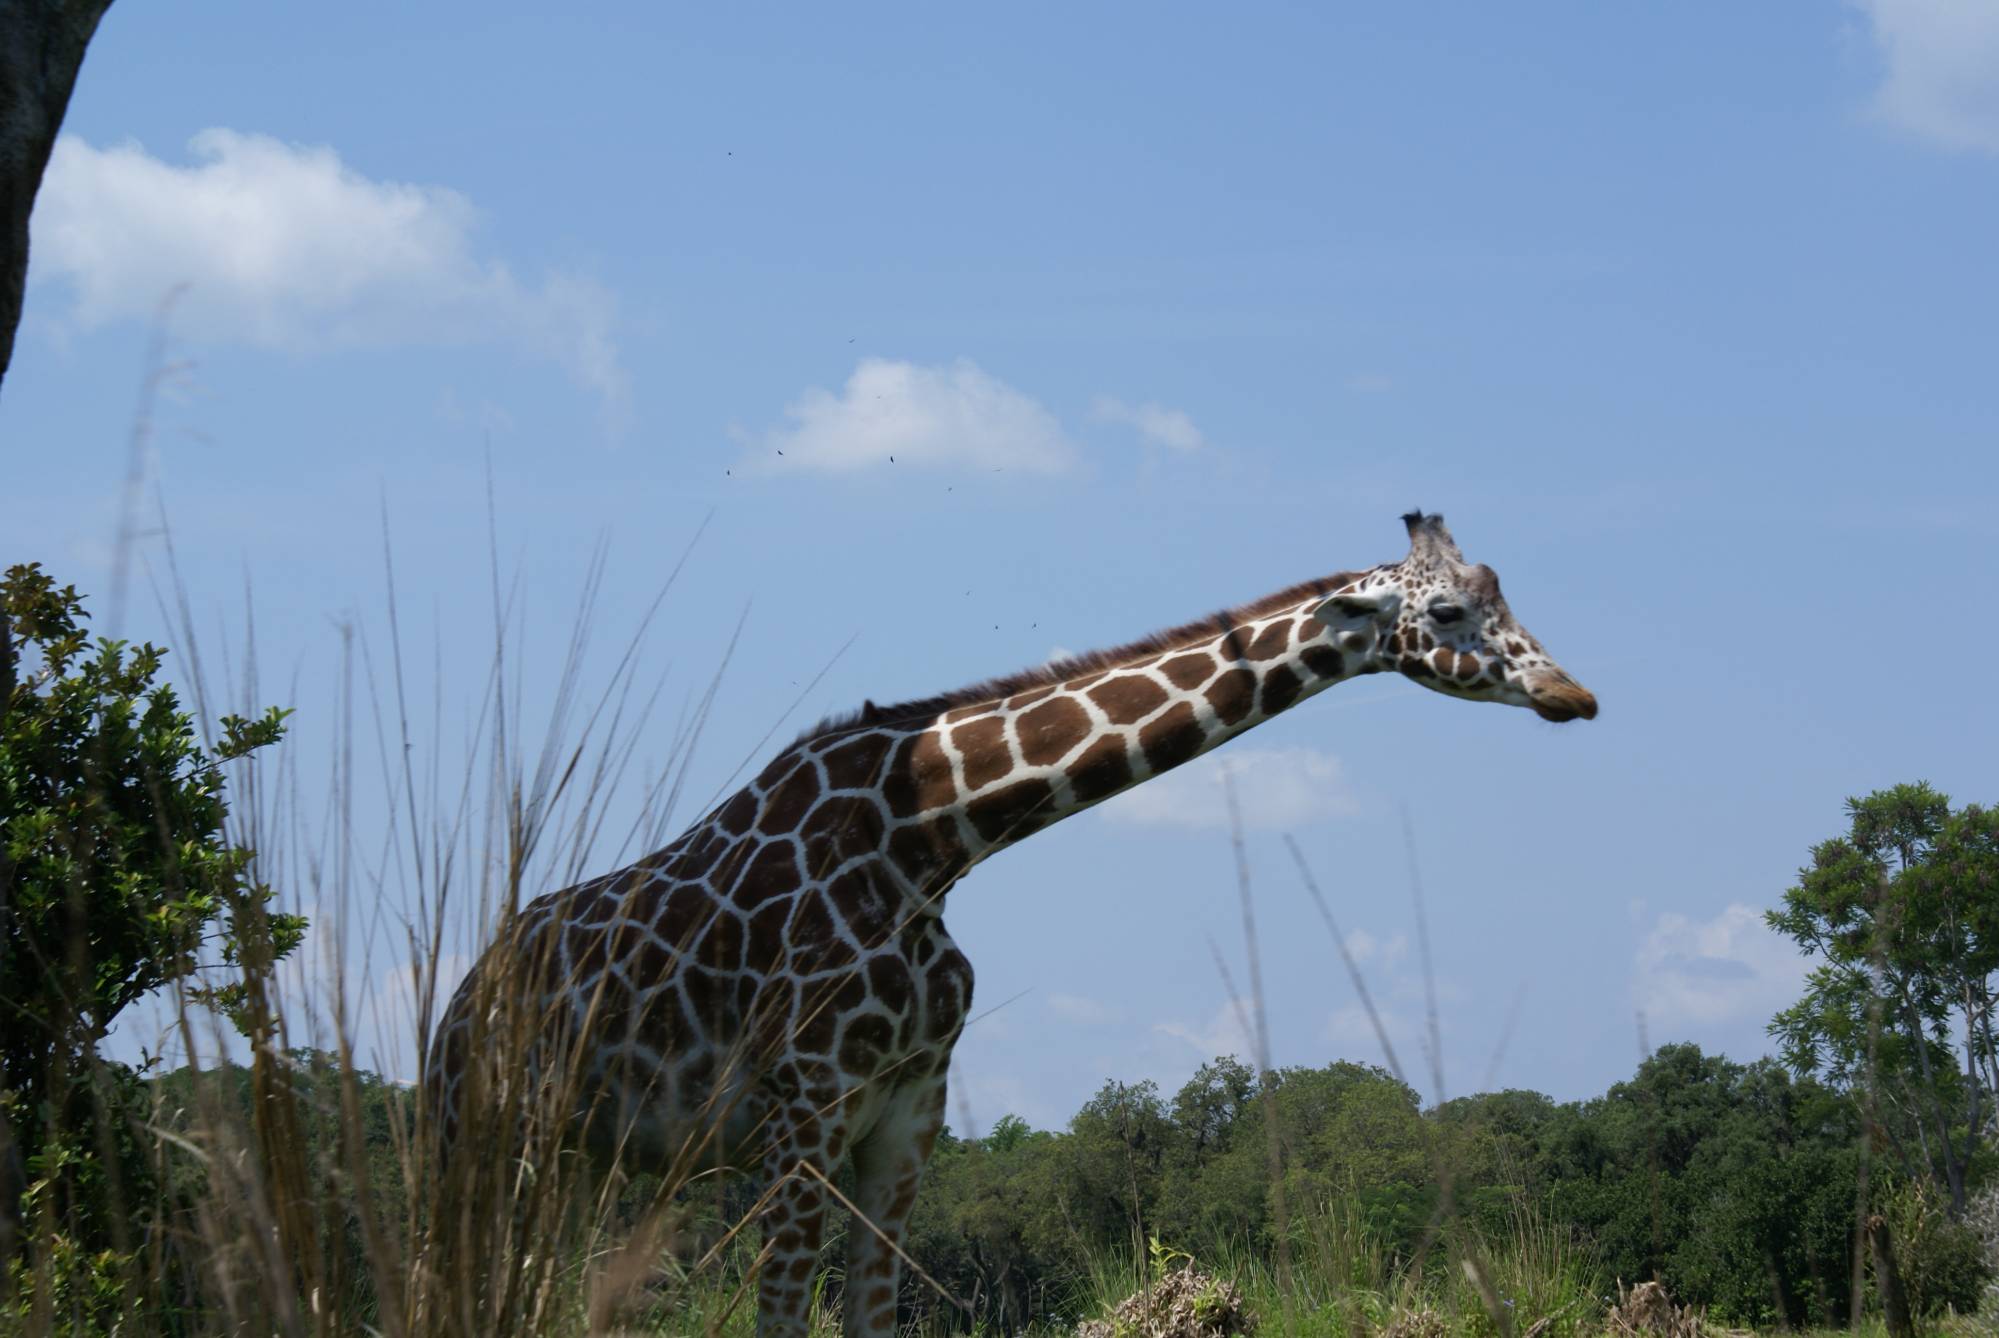 Giraffe Wallking the Savanna